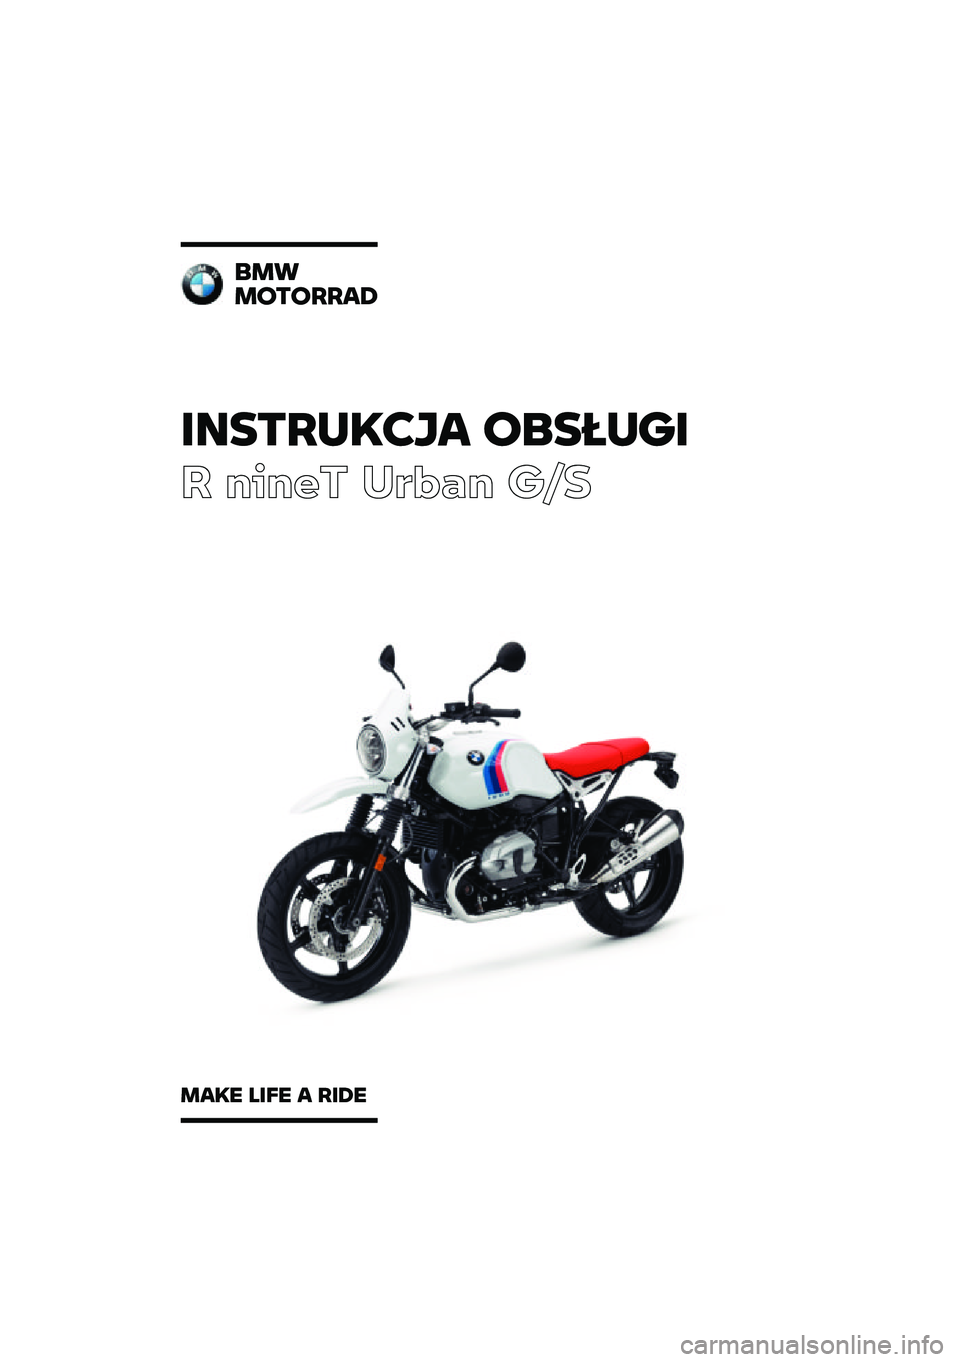 BMW MOTORRAD R NINE T URVAN G/S 2020  Instrukcja obsługi (in Polish) �������\b�	�
� �\f�
�����
� ����� ��\b�	�
� ��\f�
�
��
��\f��\f����
���\b� ���� � ���� 